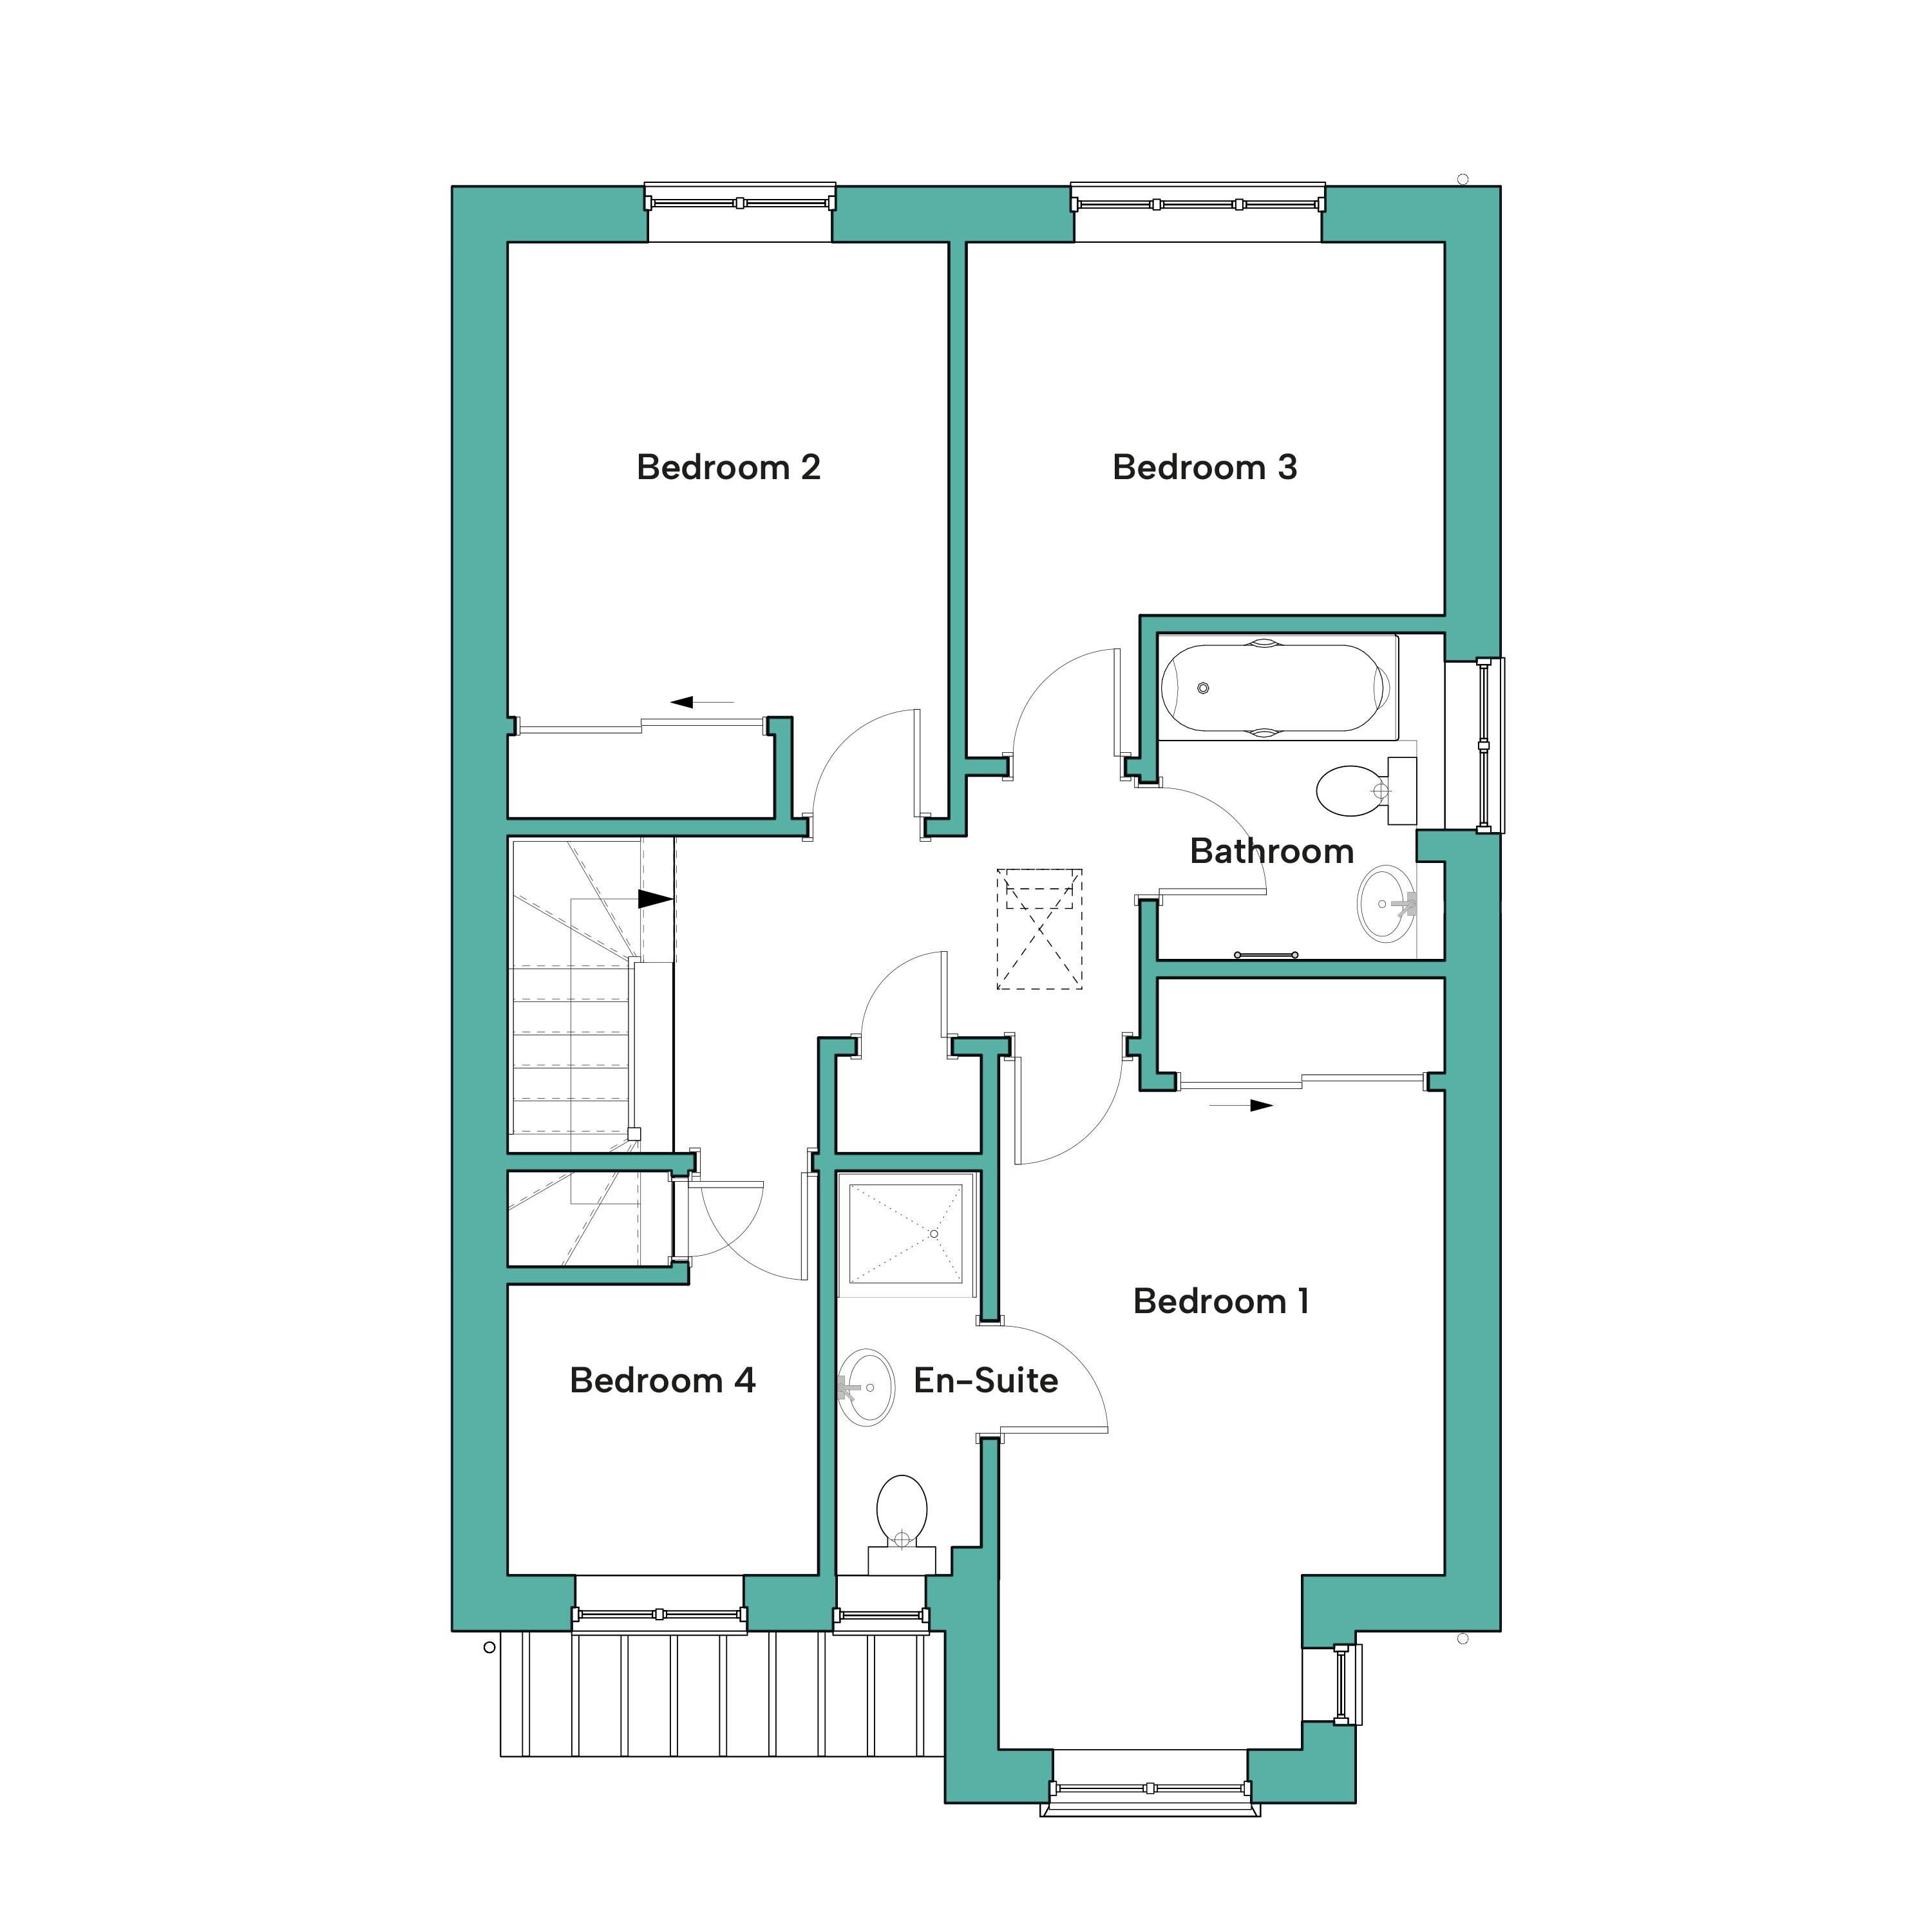 First floor floor plan of The Teal